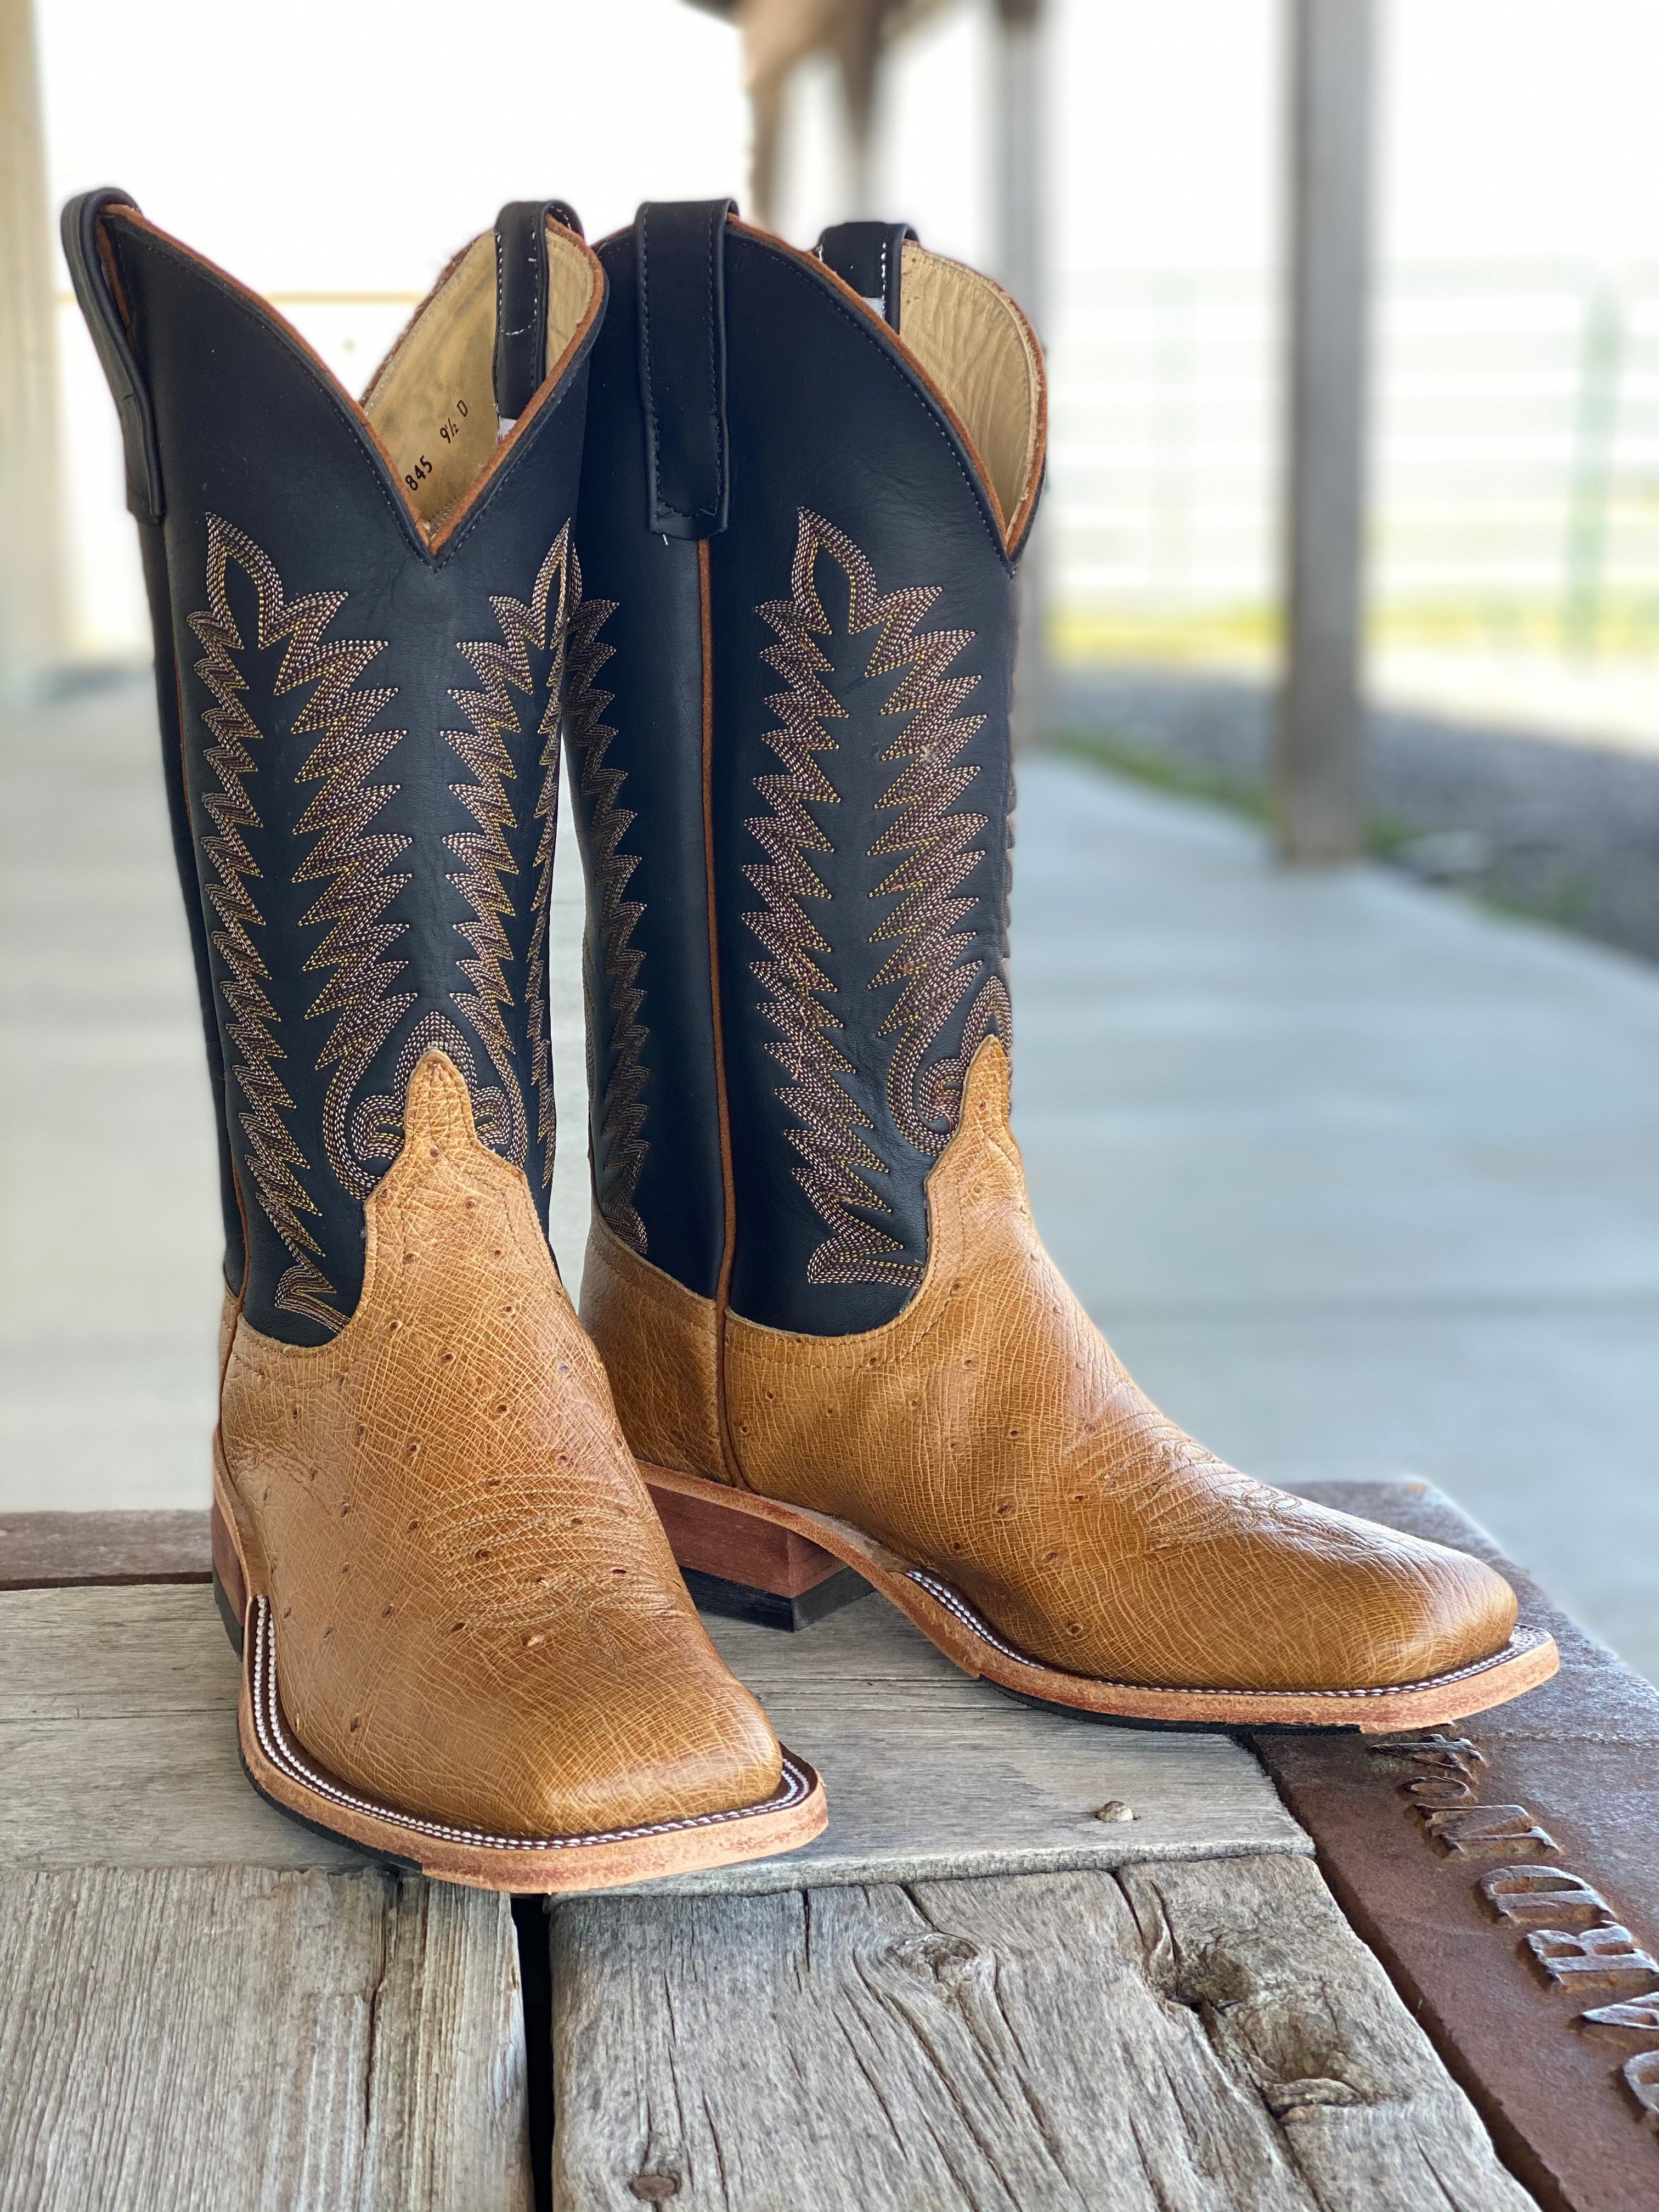 Boots & Saddle Texas Mug, 13 oz.